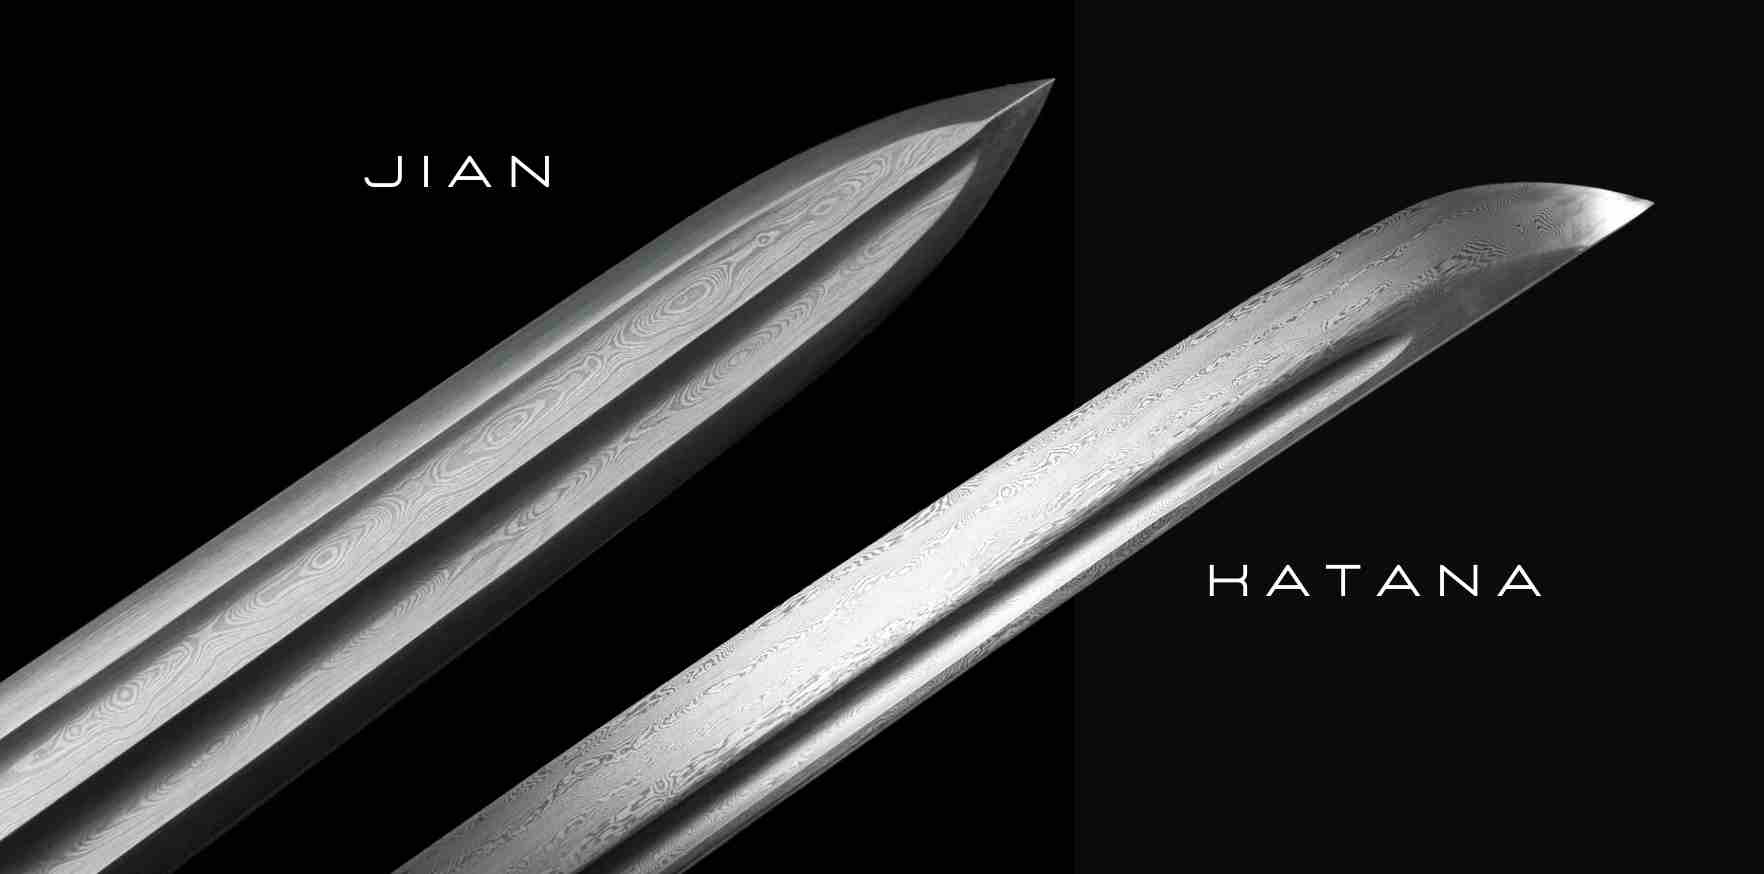 katana blade vs jian blade